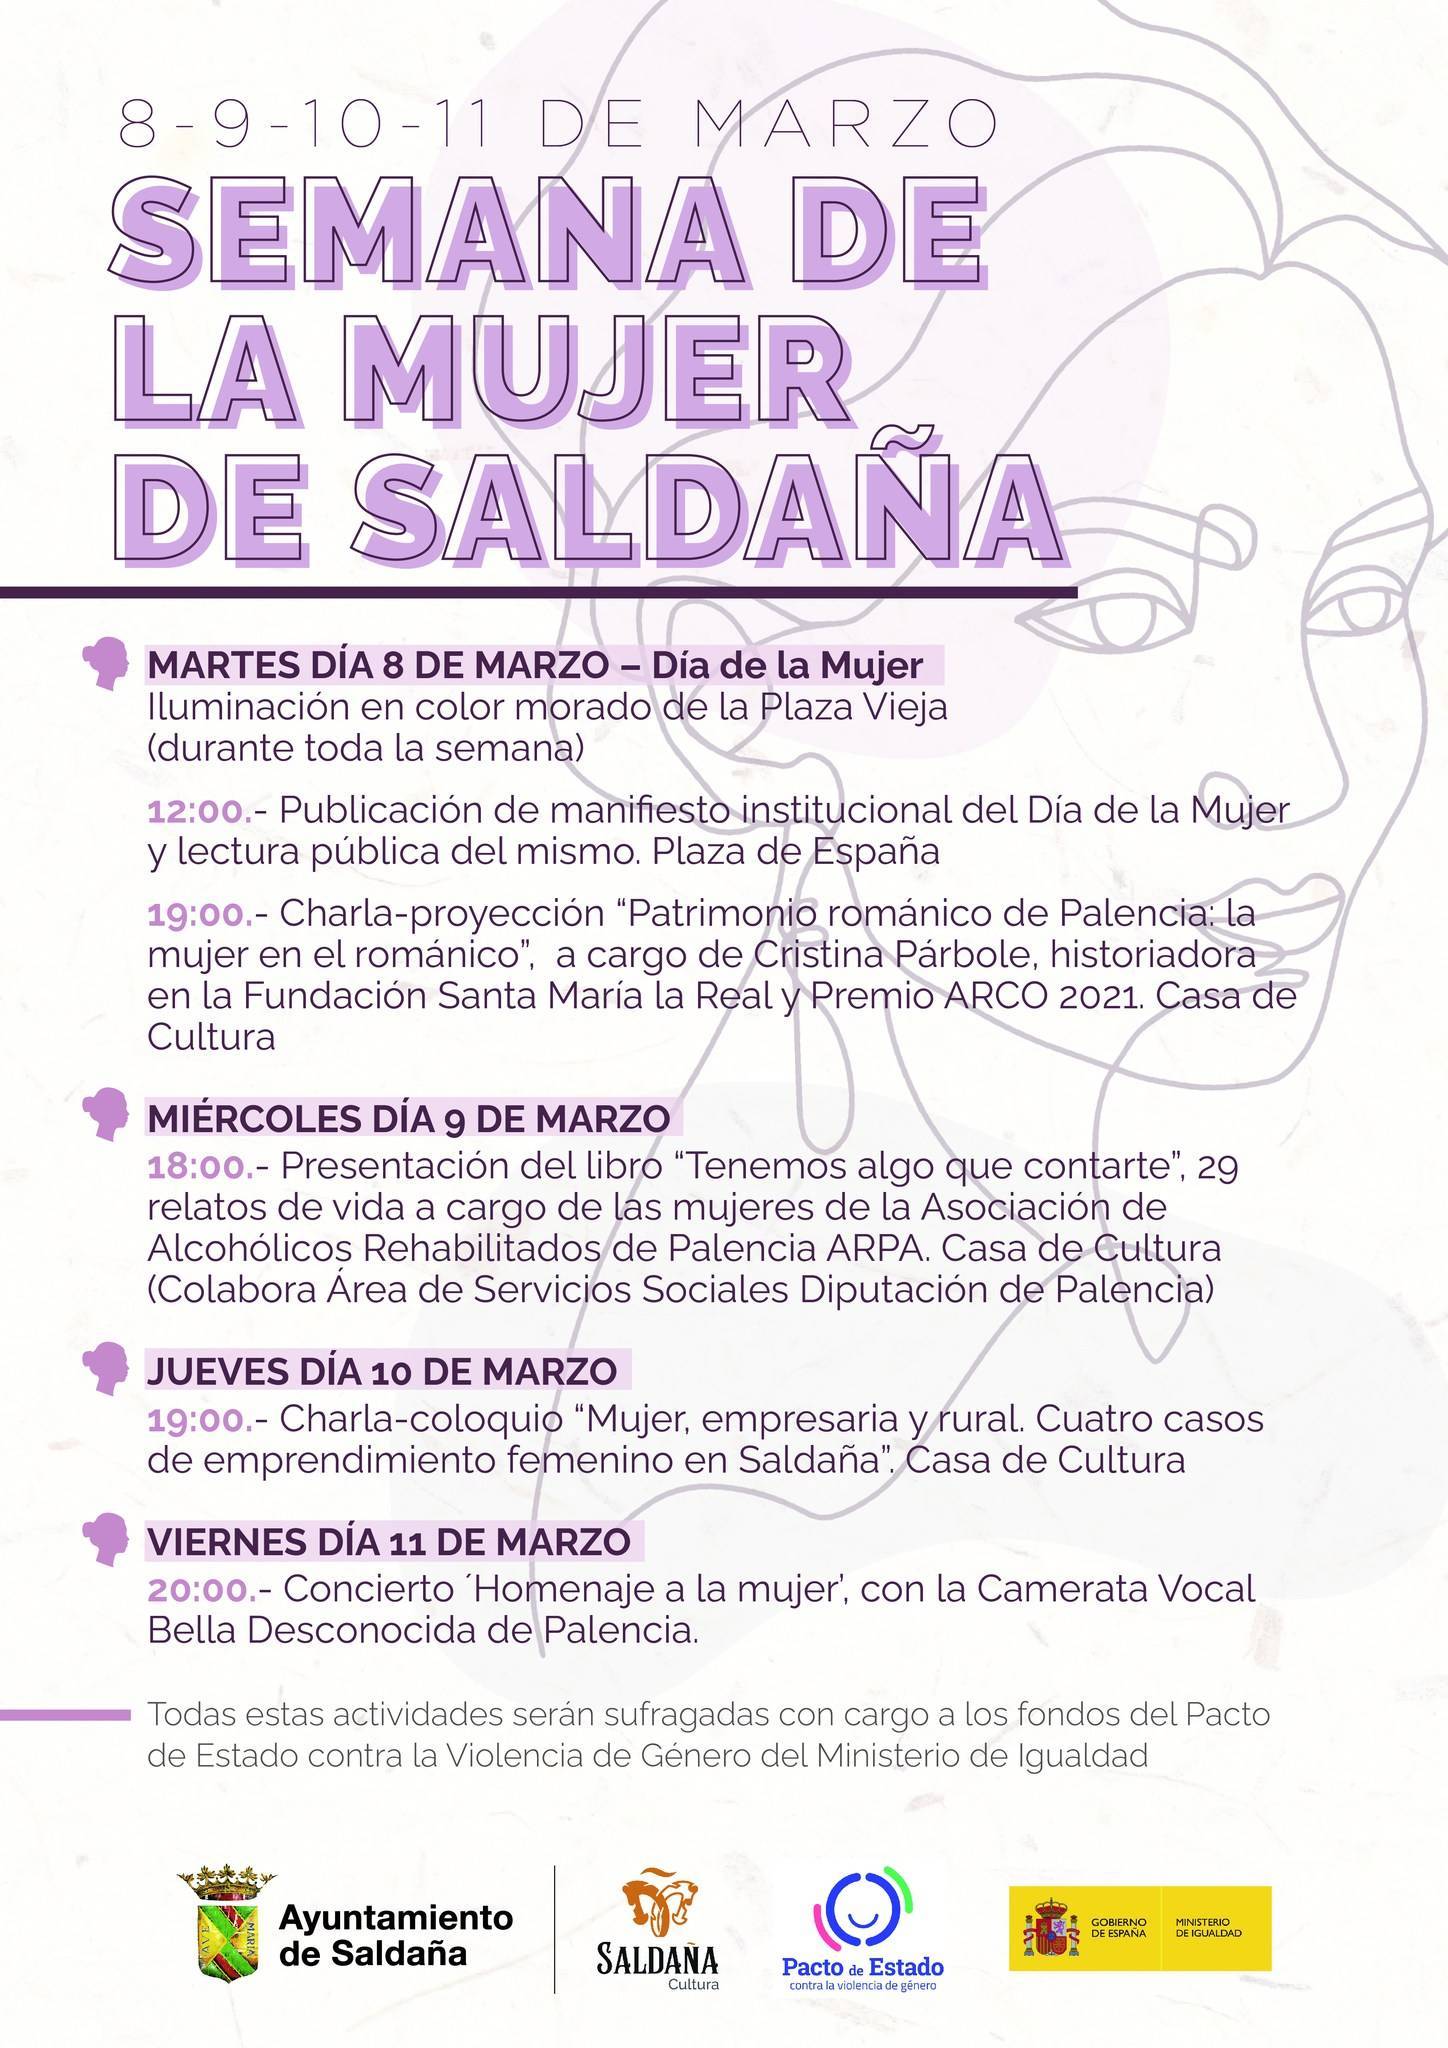 Semana de la Mujer (2022) - Saldaña (Palencia)